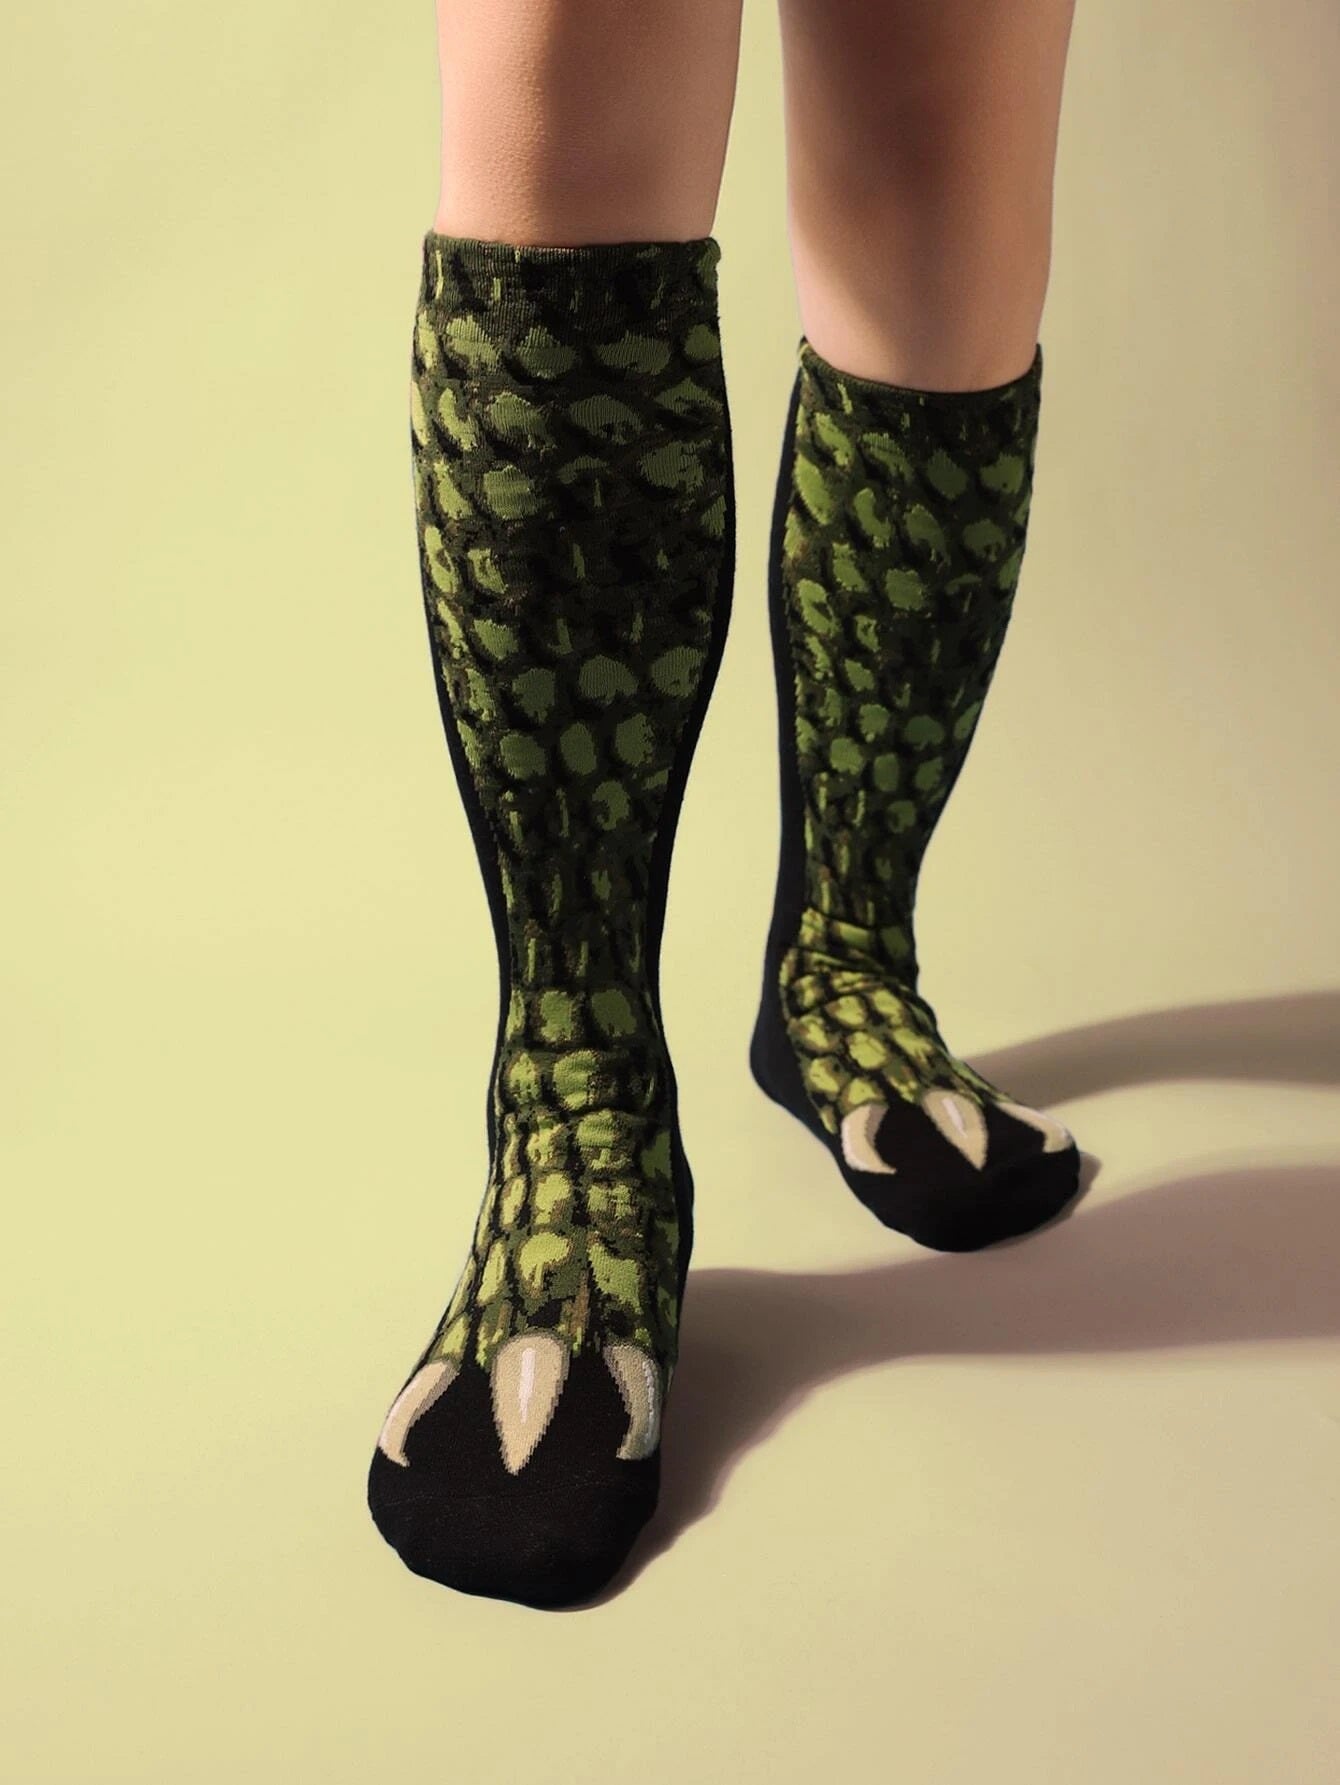 Reptile Legs Socks